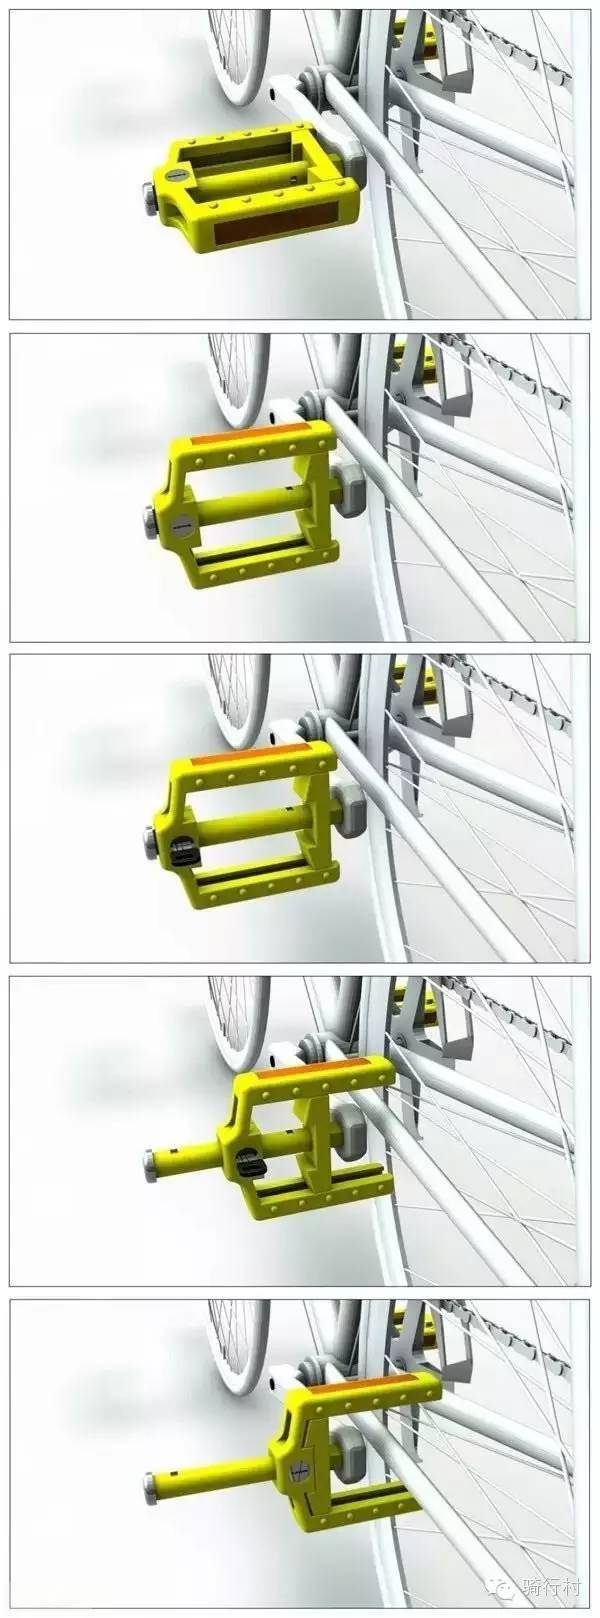 自行车防盗踏板一款多功能的创意产品设计,自行车座变身车锁的完美